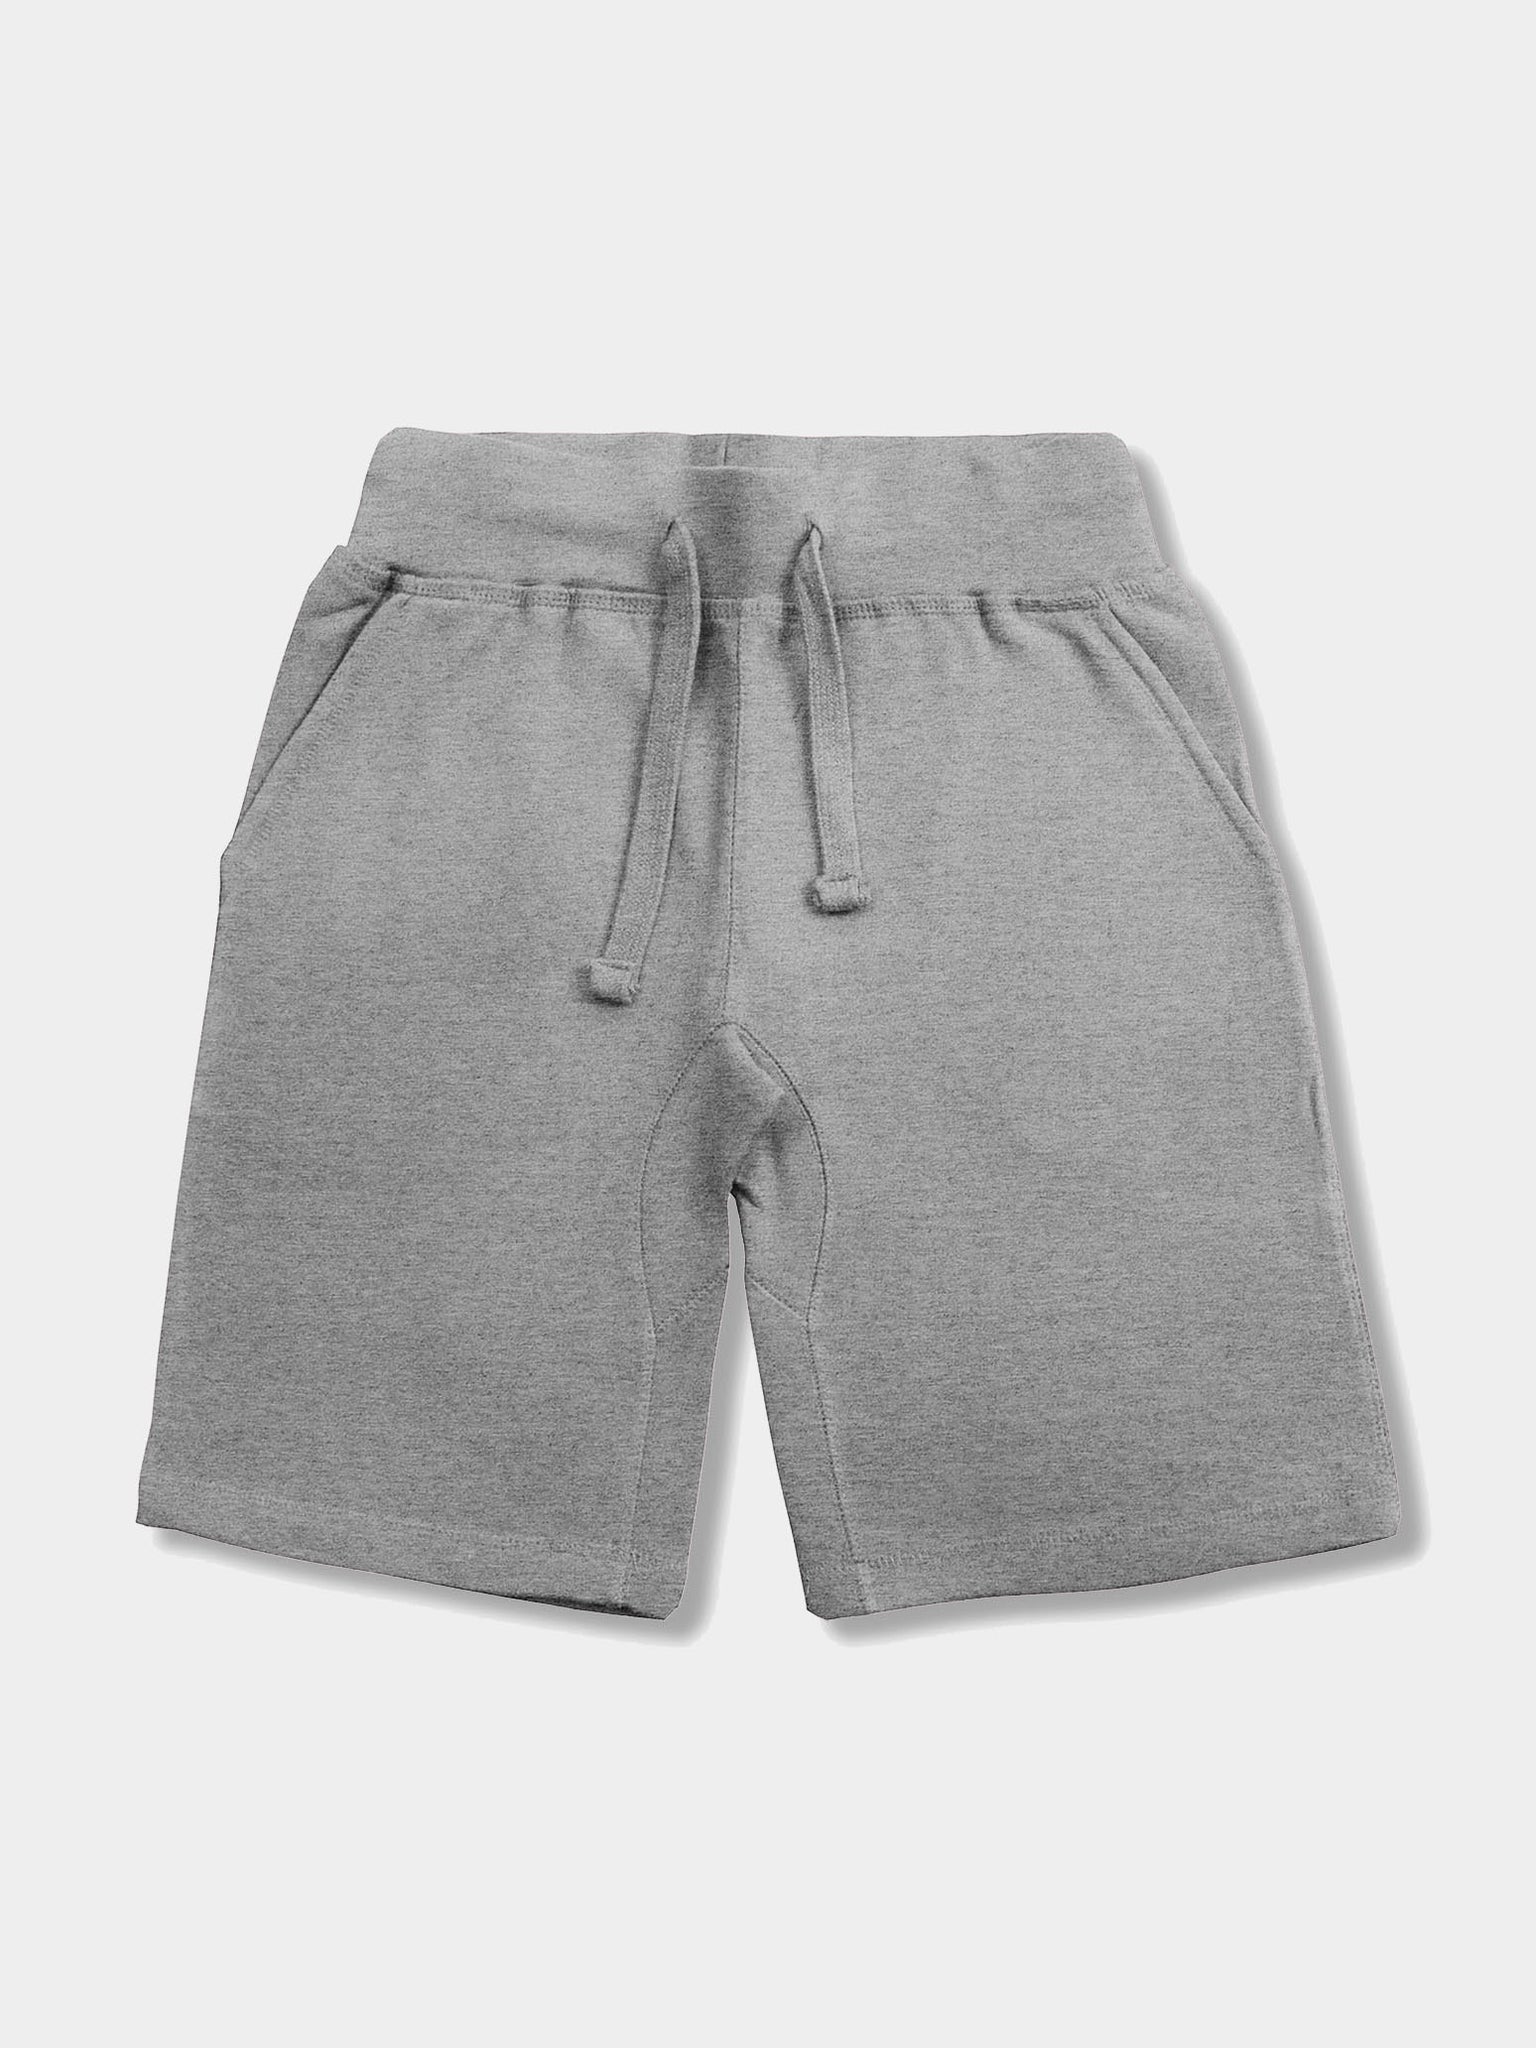 sweet shorts for men